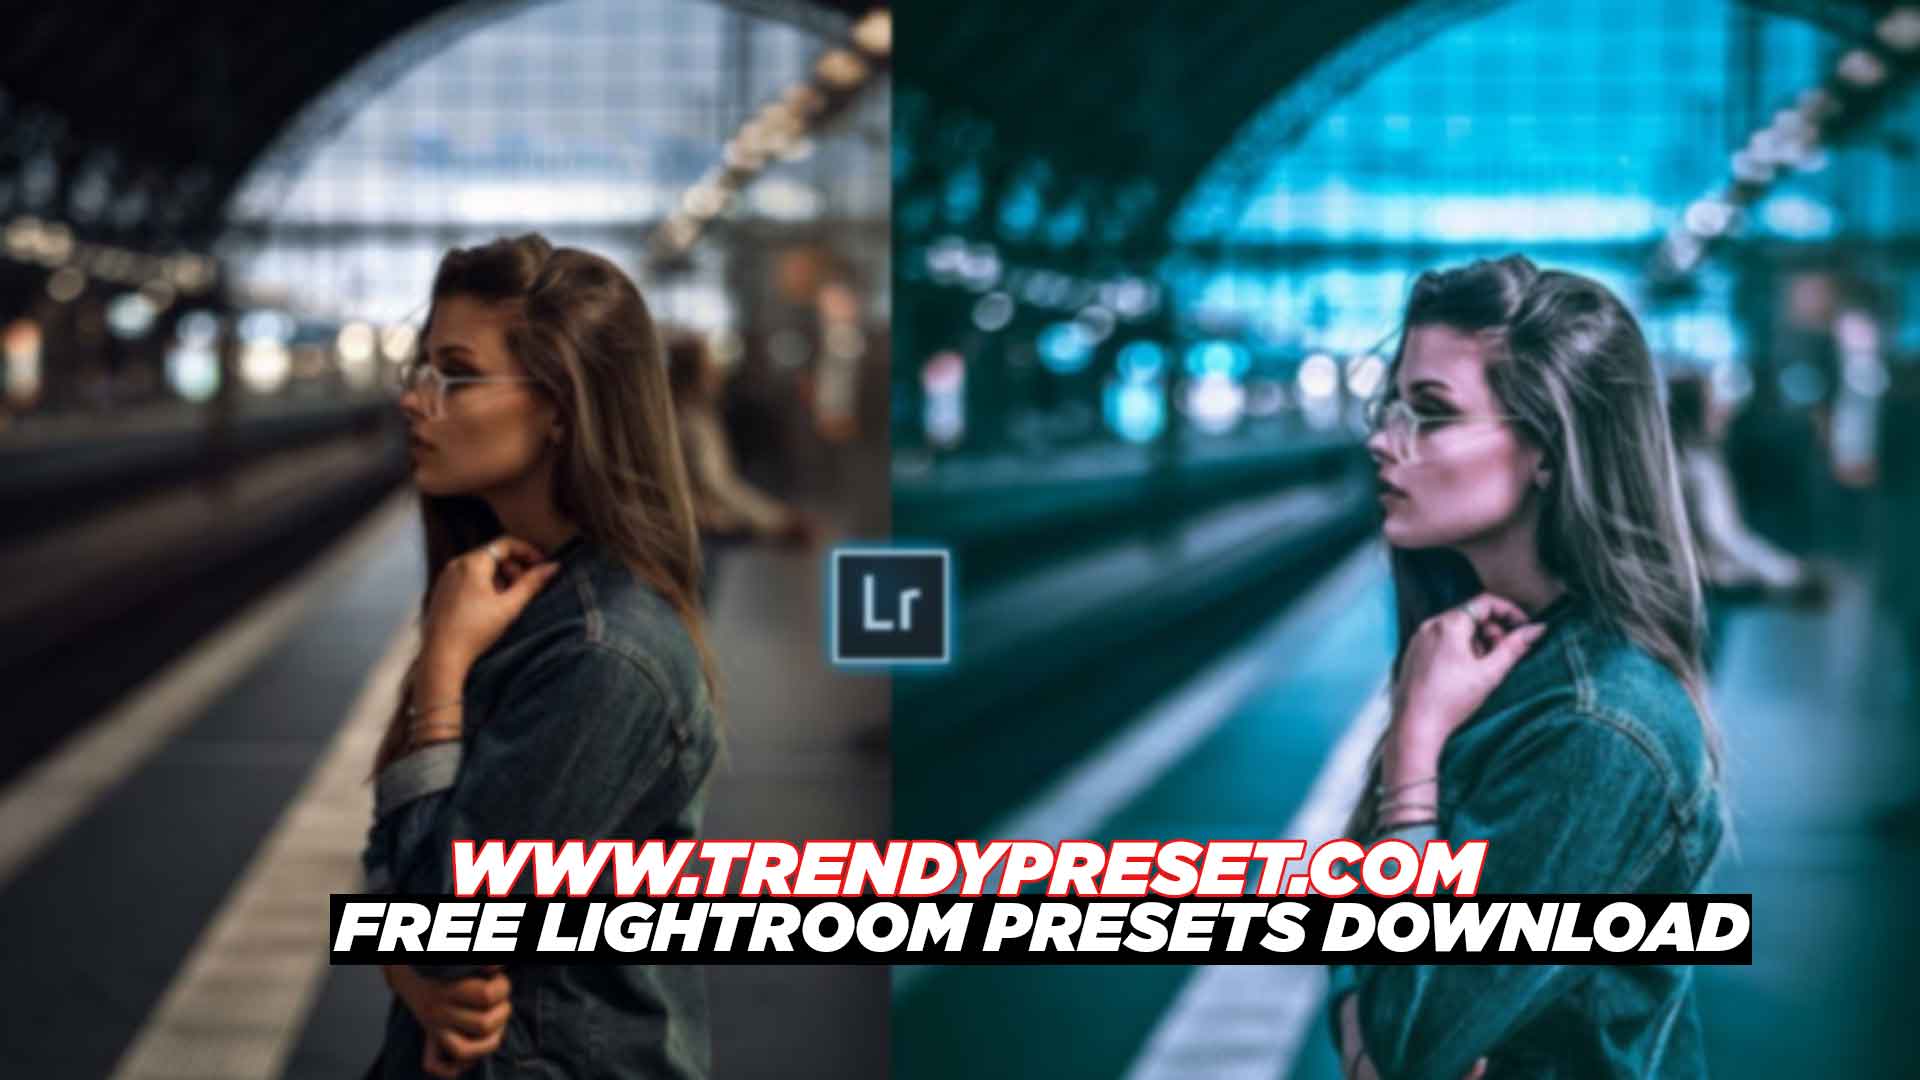 Free Lightroom Presets Download